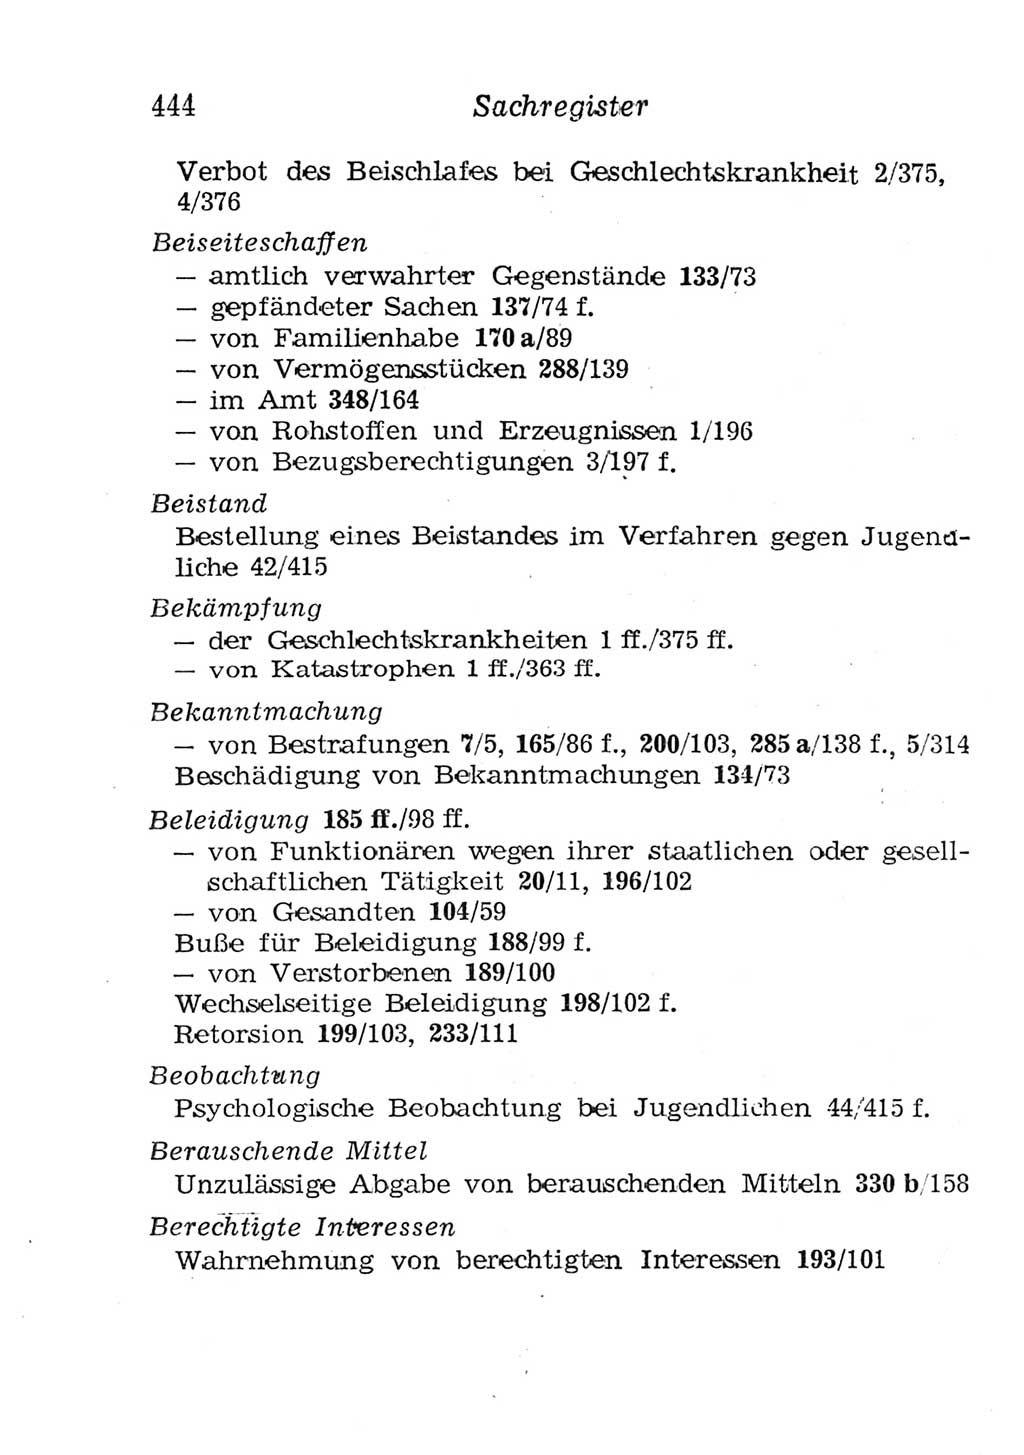 Strafgesetzbuch (StGB) und andere Strafgesetze [Deutsche Demokratische Republik (DDR)] 1957, Seite 444 (StGB Strafges. DDR 1957, S. 444)